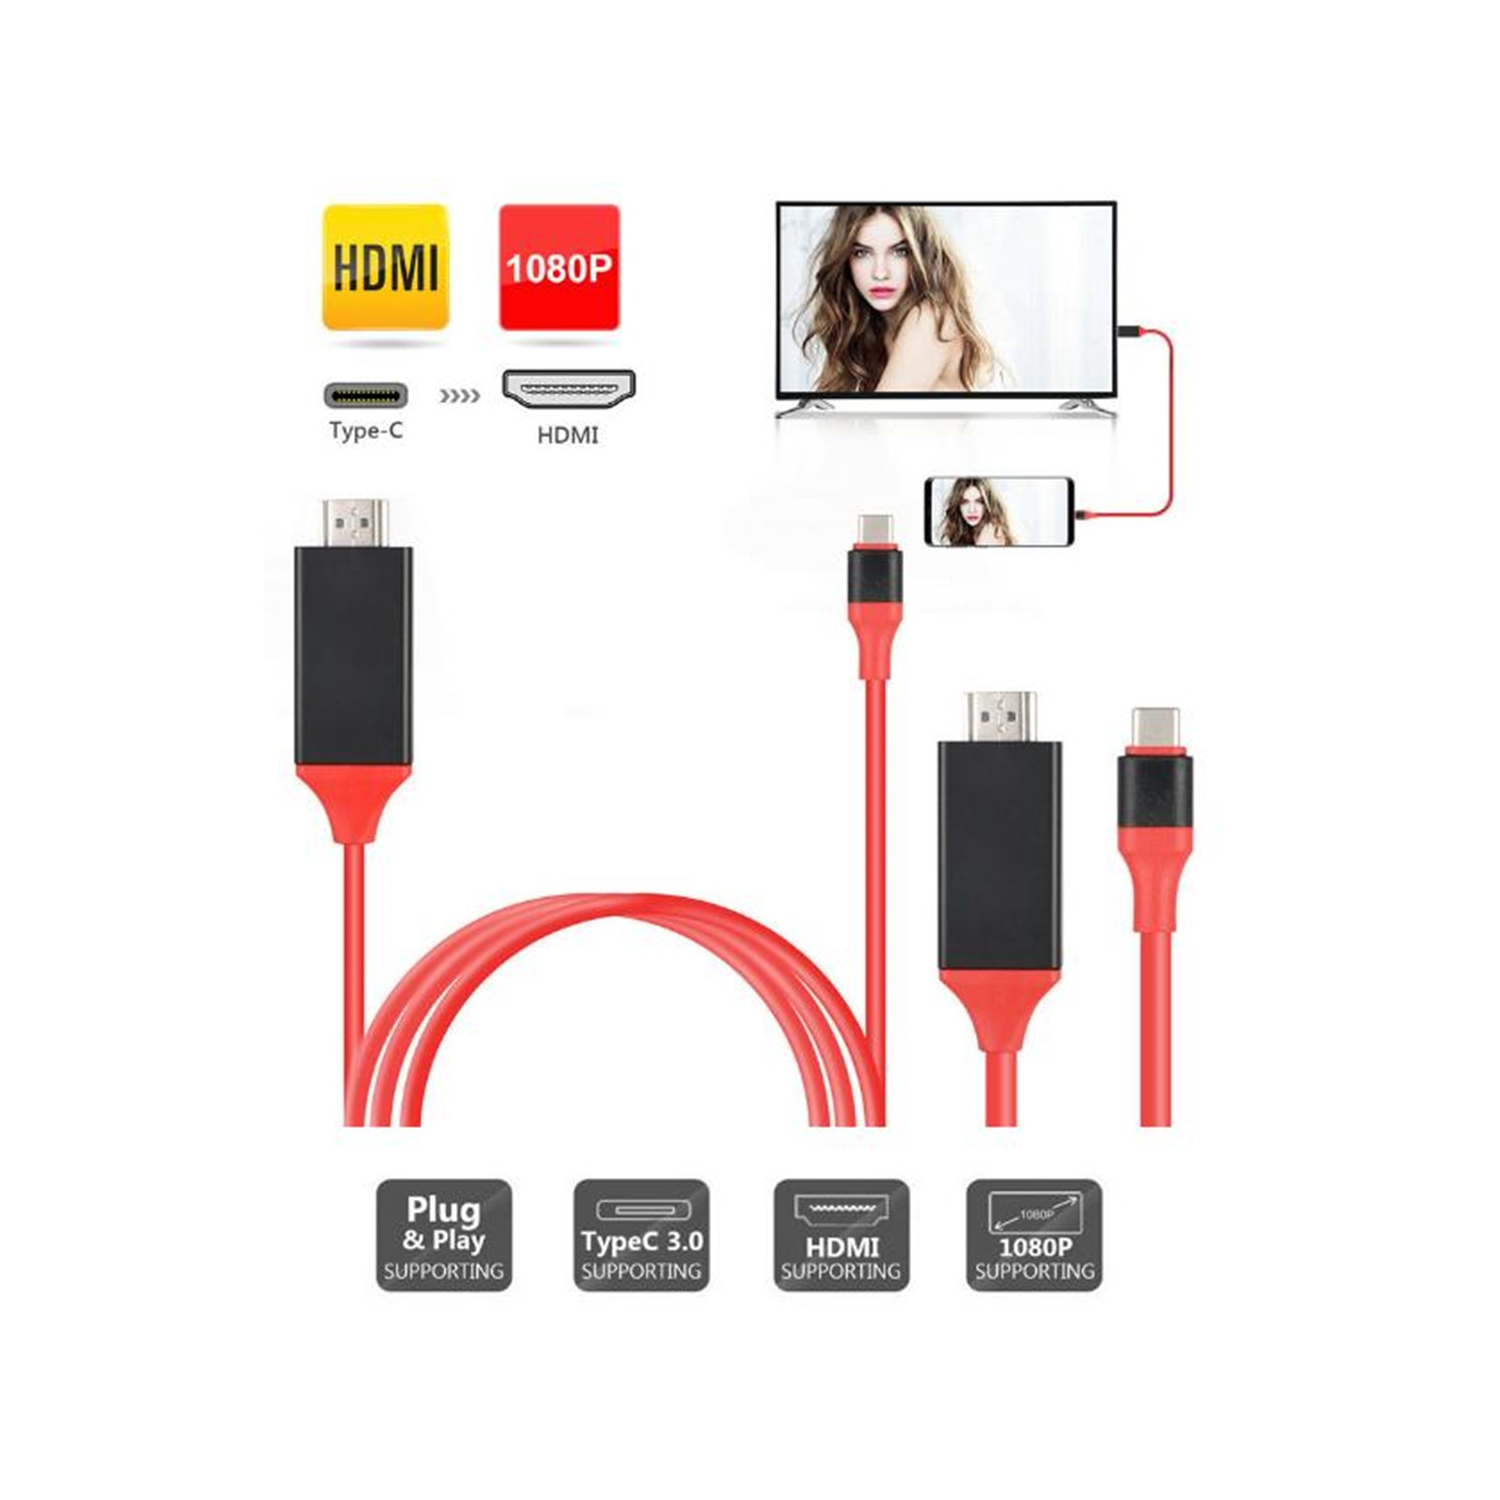 Comprar Adaptador USB C a HDMI, Adaptador de Cable USB 3.1 Tipo-C a HDMI, TV  4K HD y convertidor de Video de proyección para Samsung S8/S8+S9/S9+,  Huawei, MacBook